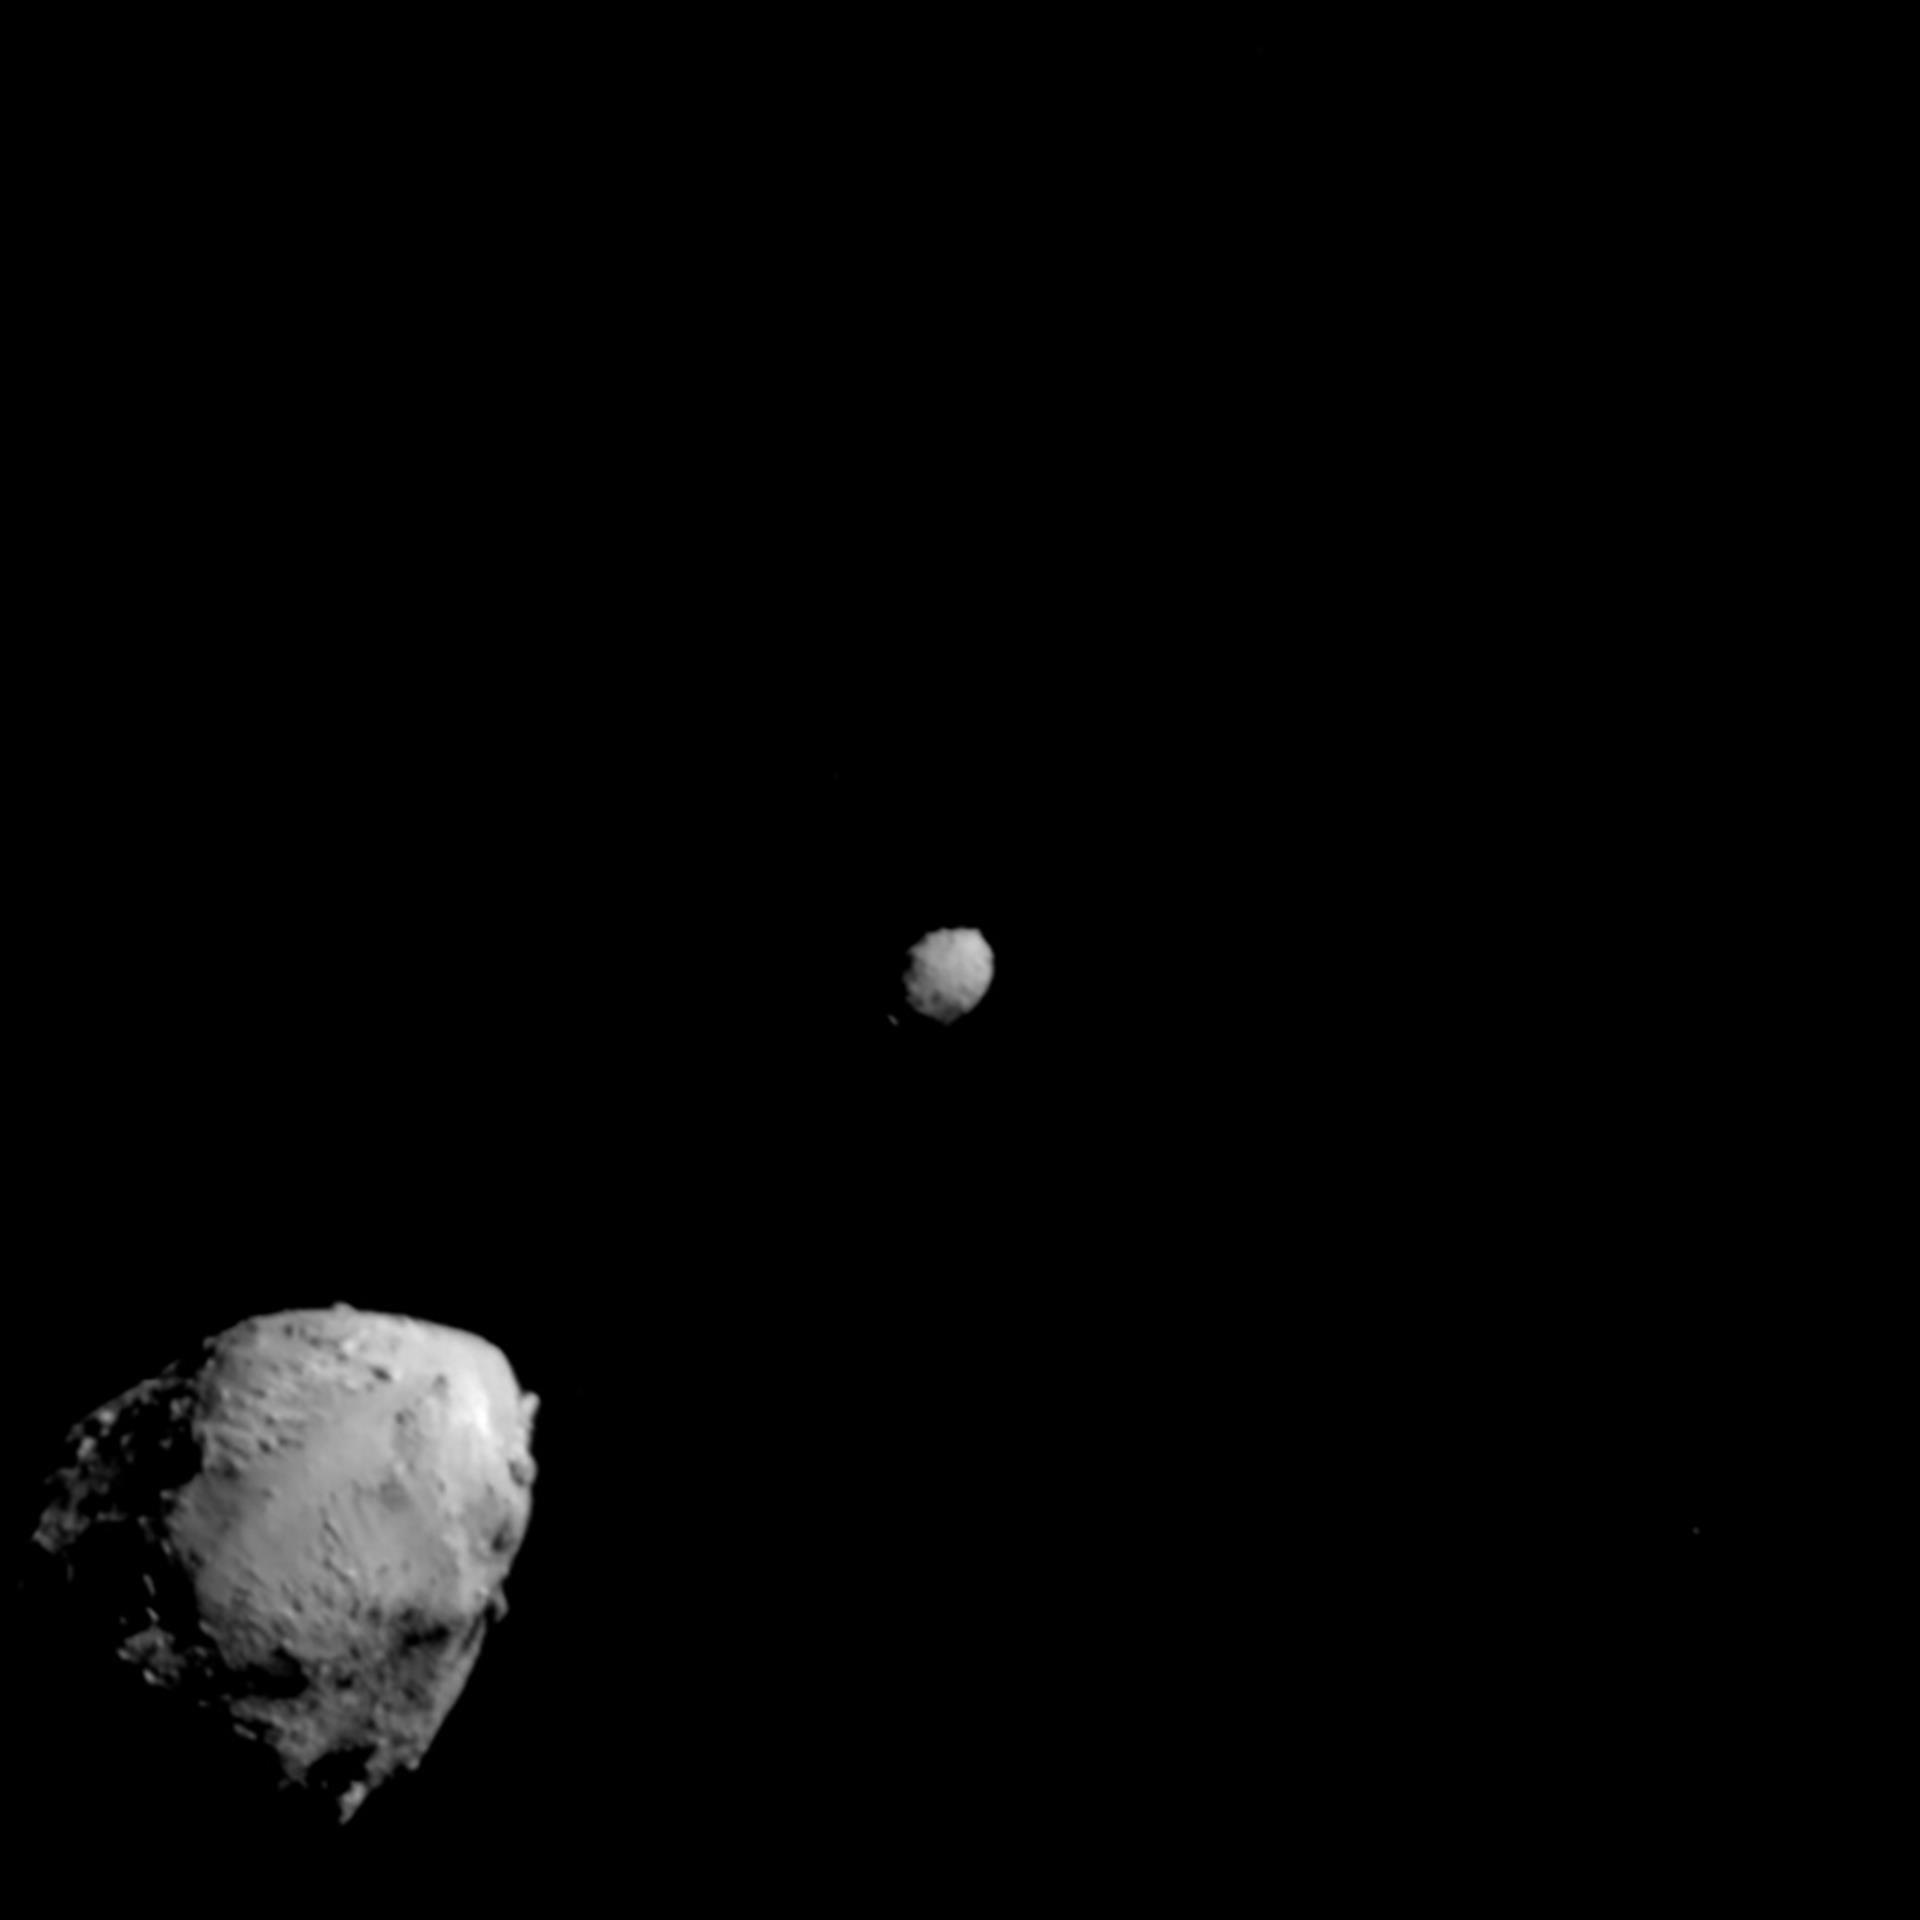 Imagen cedida por la NASA donde se muestra el asteroide Didymos (izq.) y su luna, Dimorphos (dcha.), unos 2,5 minutos antes del impacto de la nave espacial DART el 26 de septiembre. EFE/NASA/Johns Hopkins APL /SOLO USO EDITORIAL /NO VENTAS /SOLO DISPONIBLE PARA ILUSTRAR LA NOTICIA QUE ACOMPAÑA /CRÉDITO OBLIGATORIO
